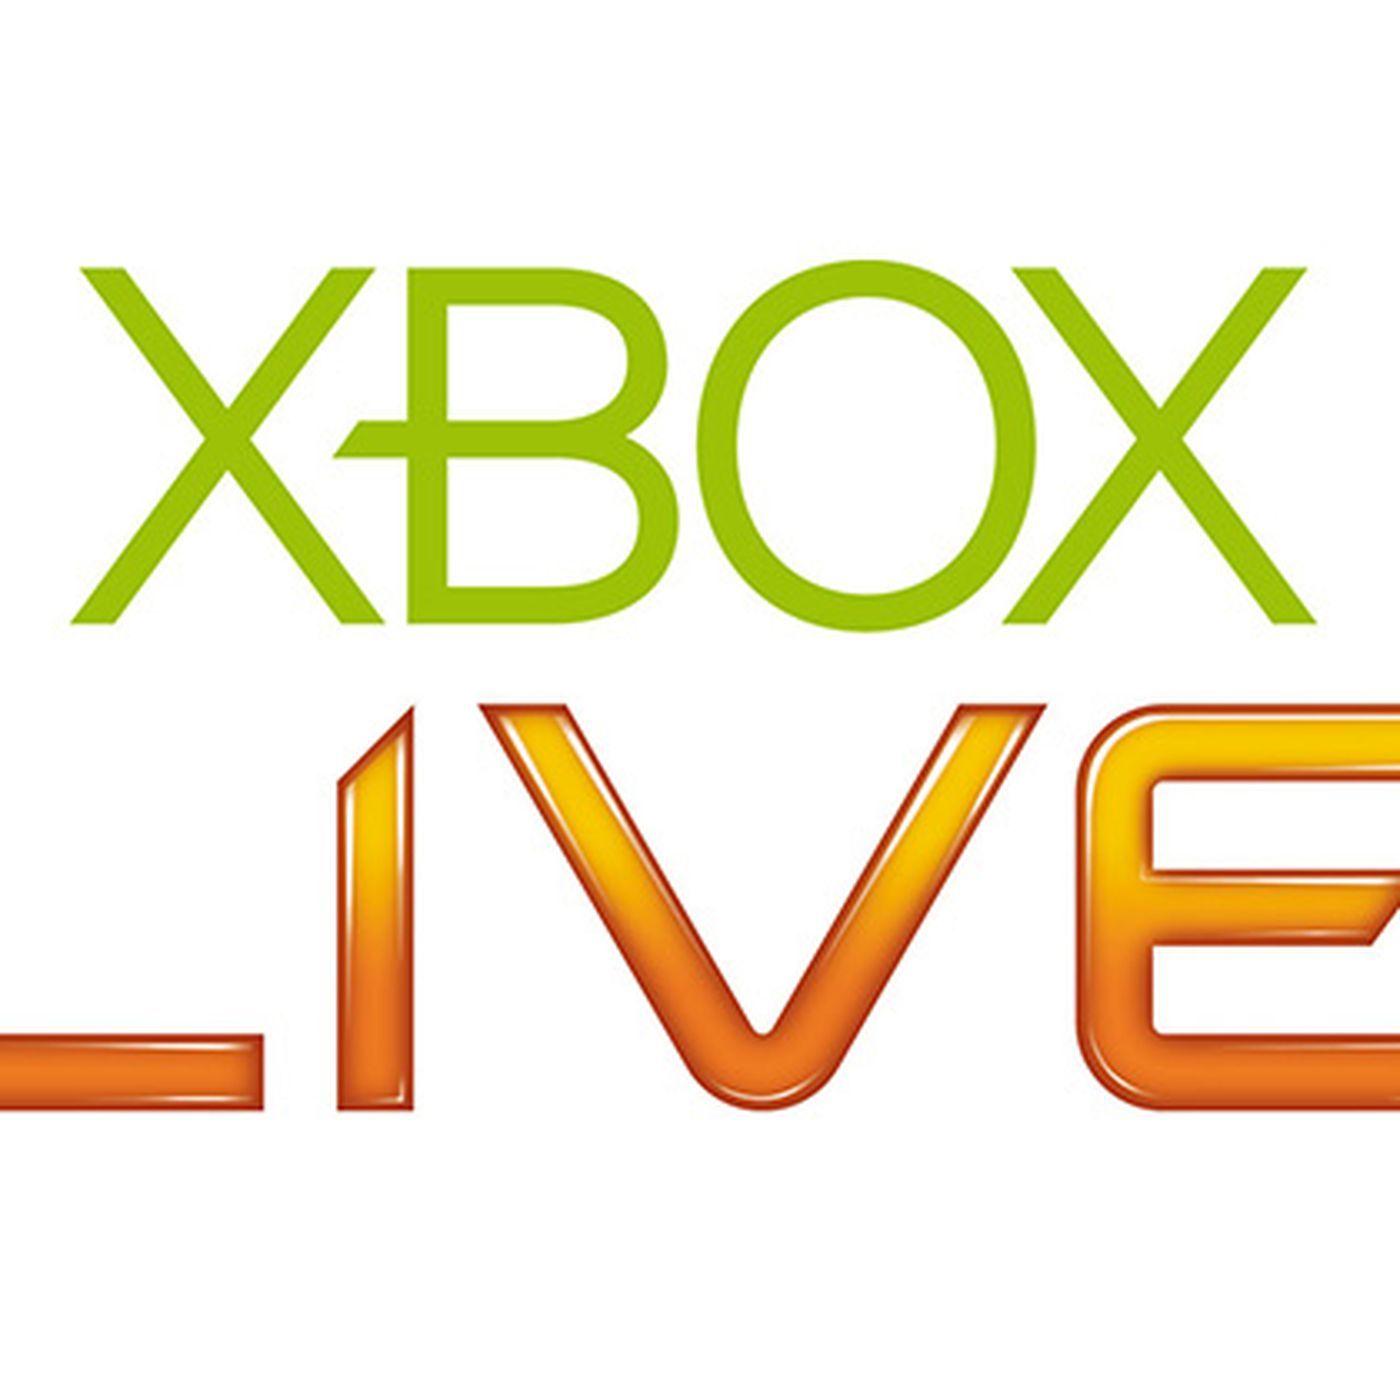 Xbox App Logo - Fox Broadcast app released on Xbox 360